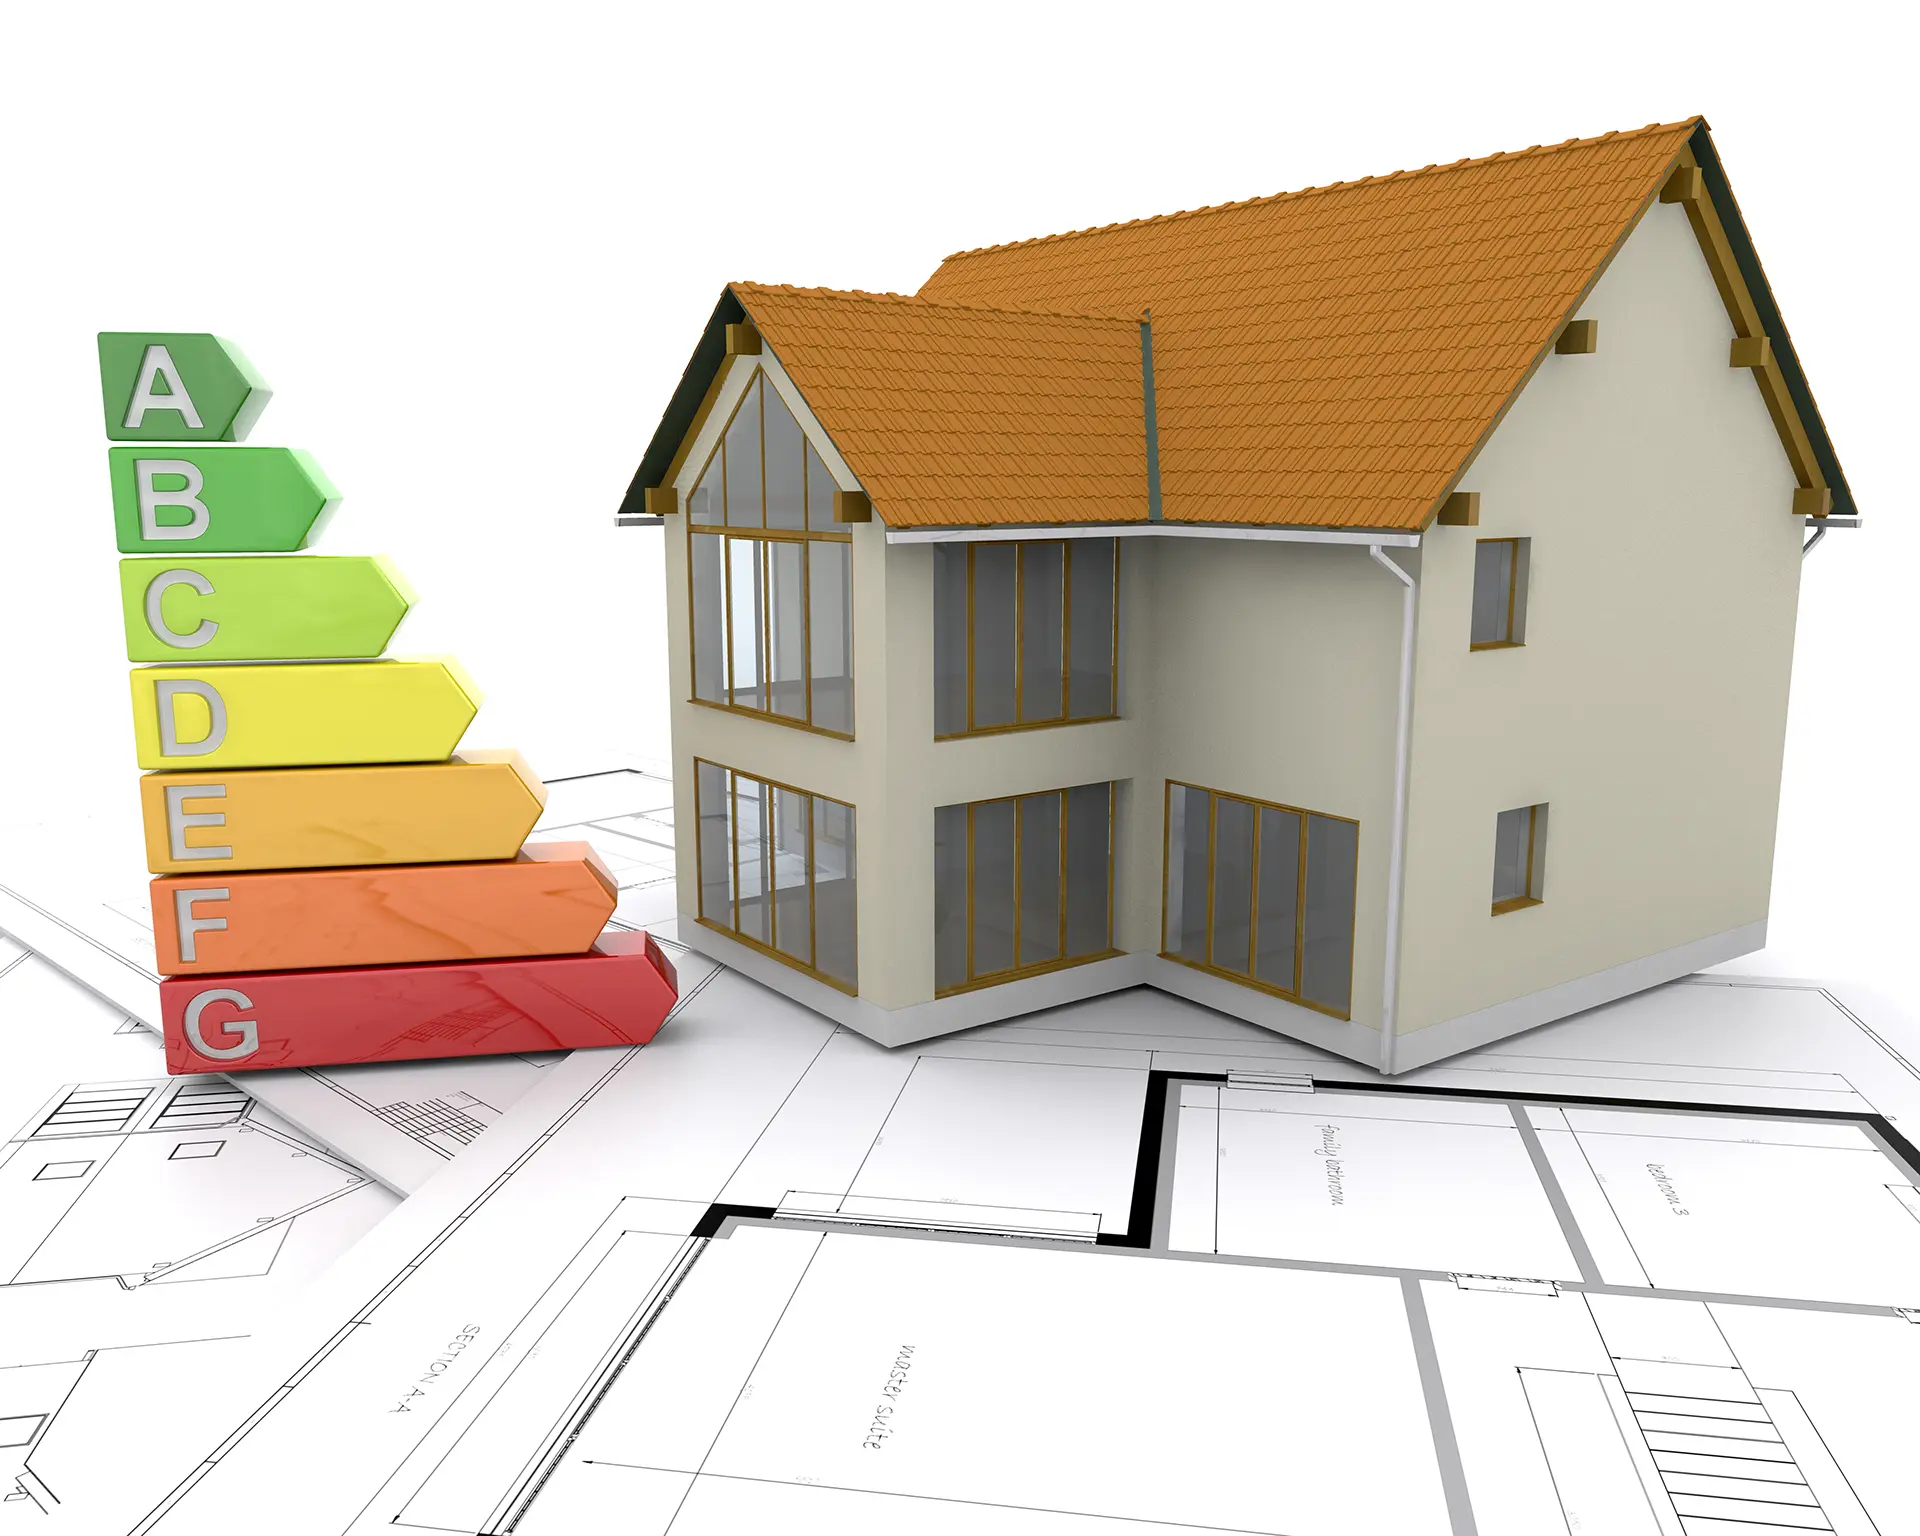 Imagen 3D de una casa sostenible representando la construcción passive house